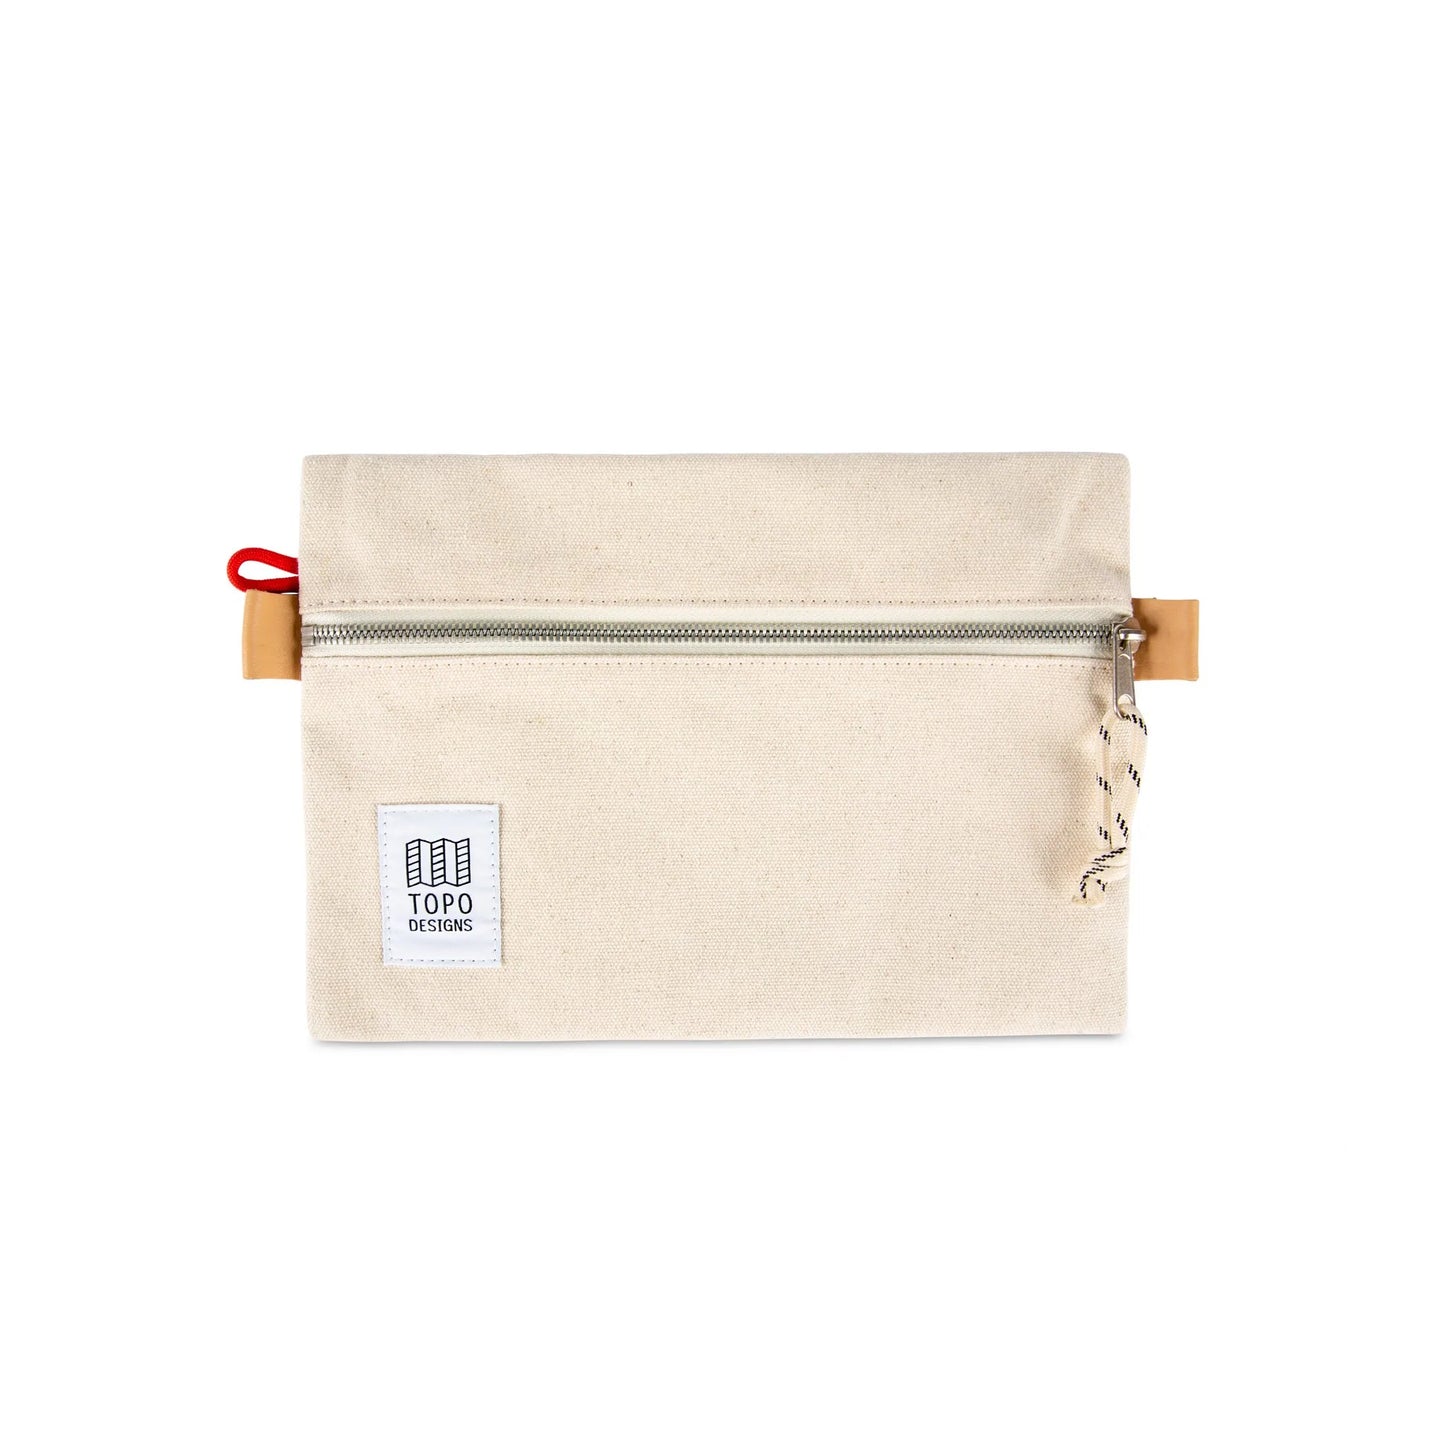 Pochette Accessory Bag - Topo Designs